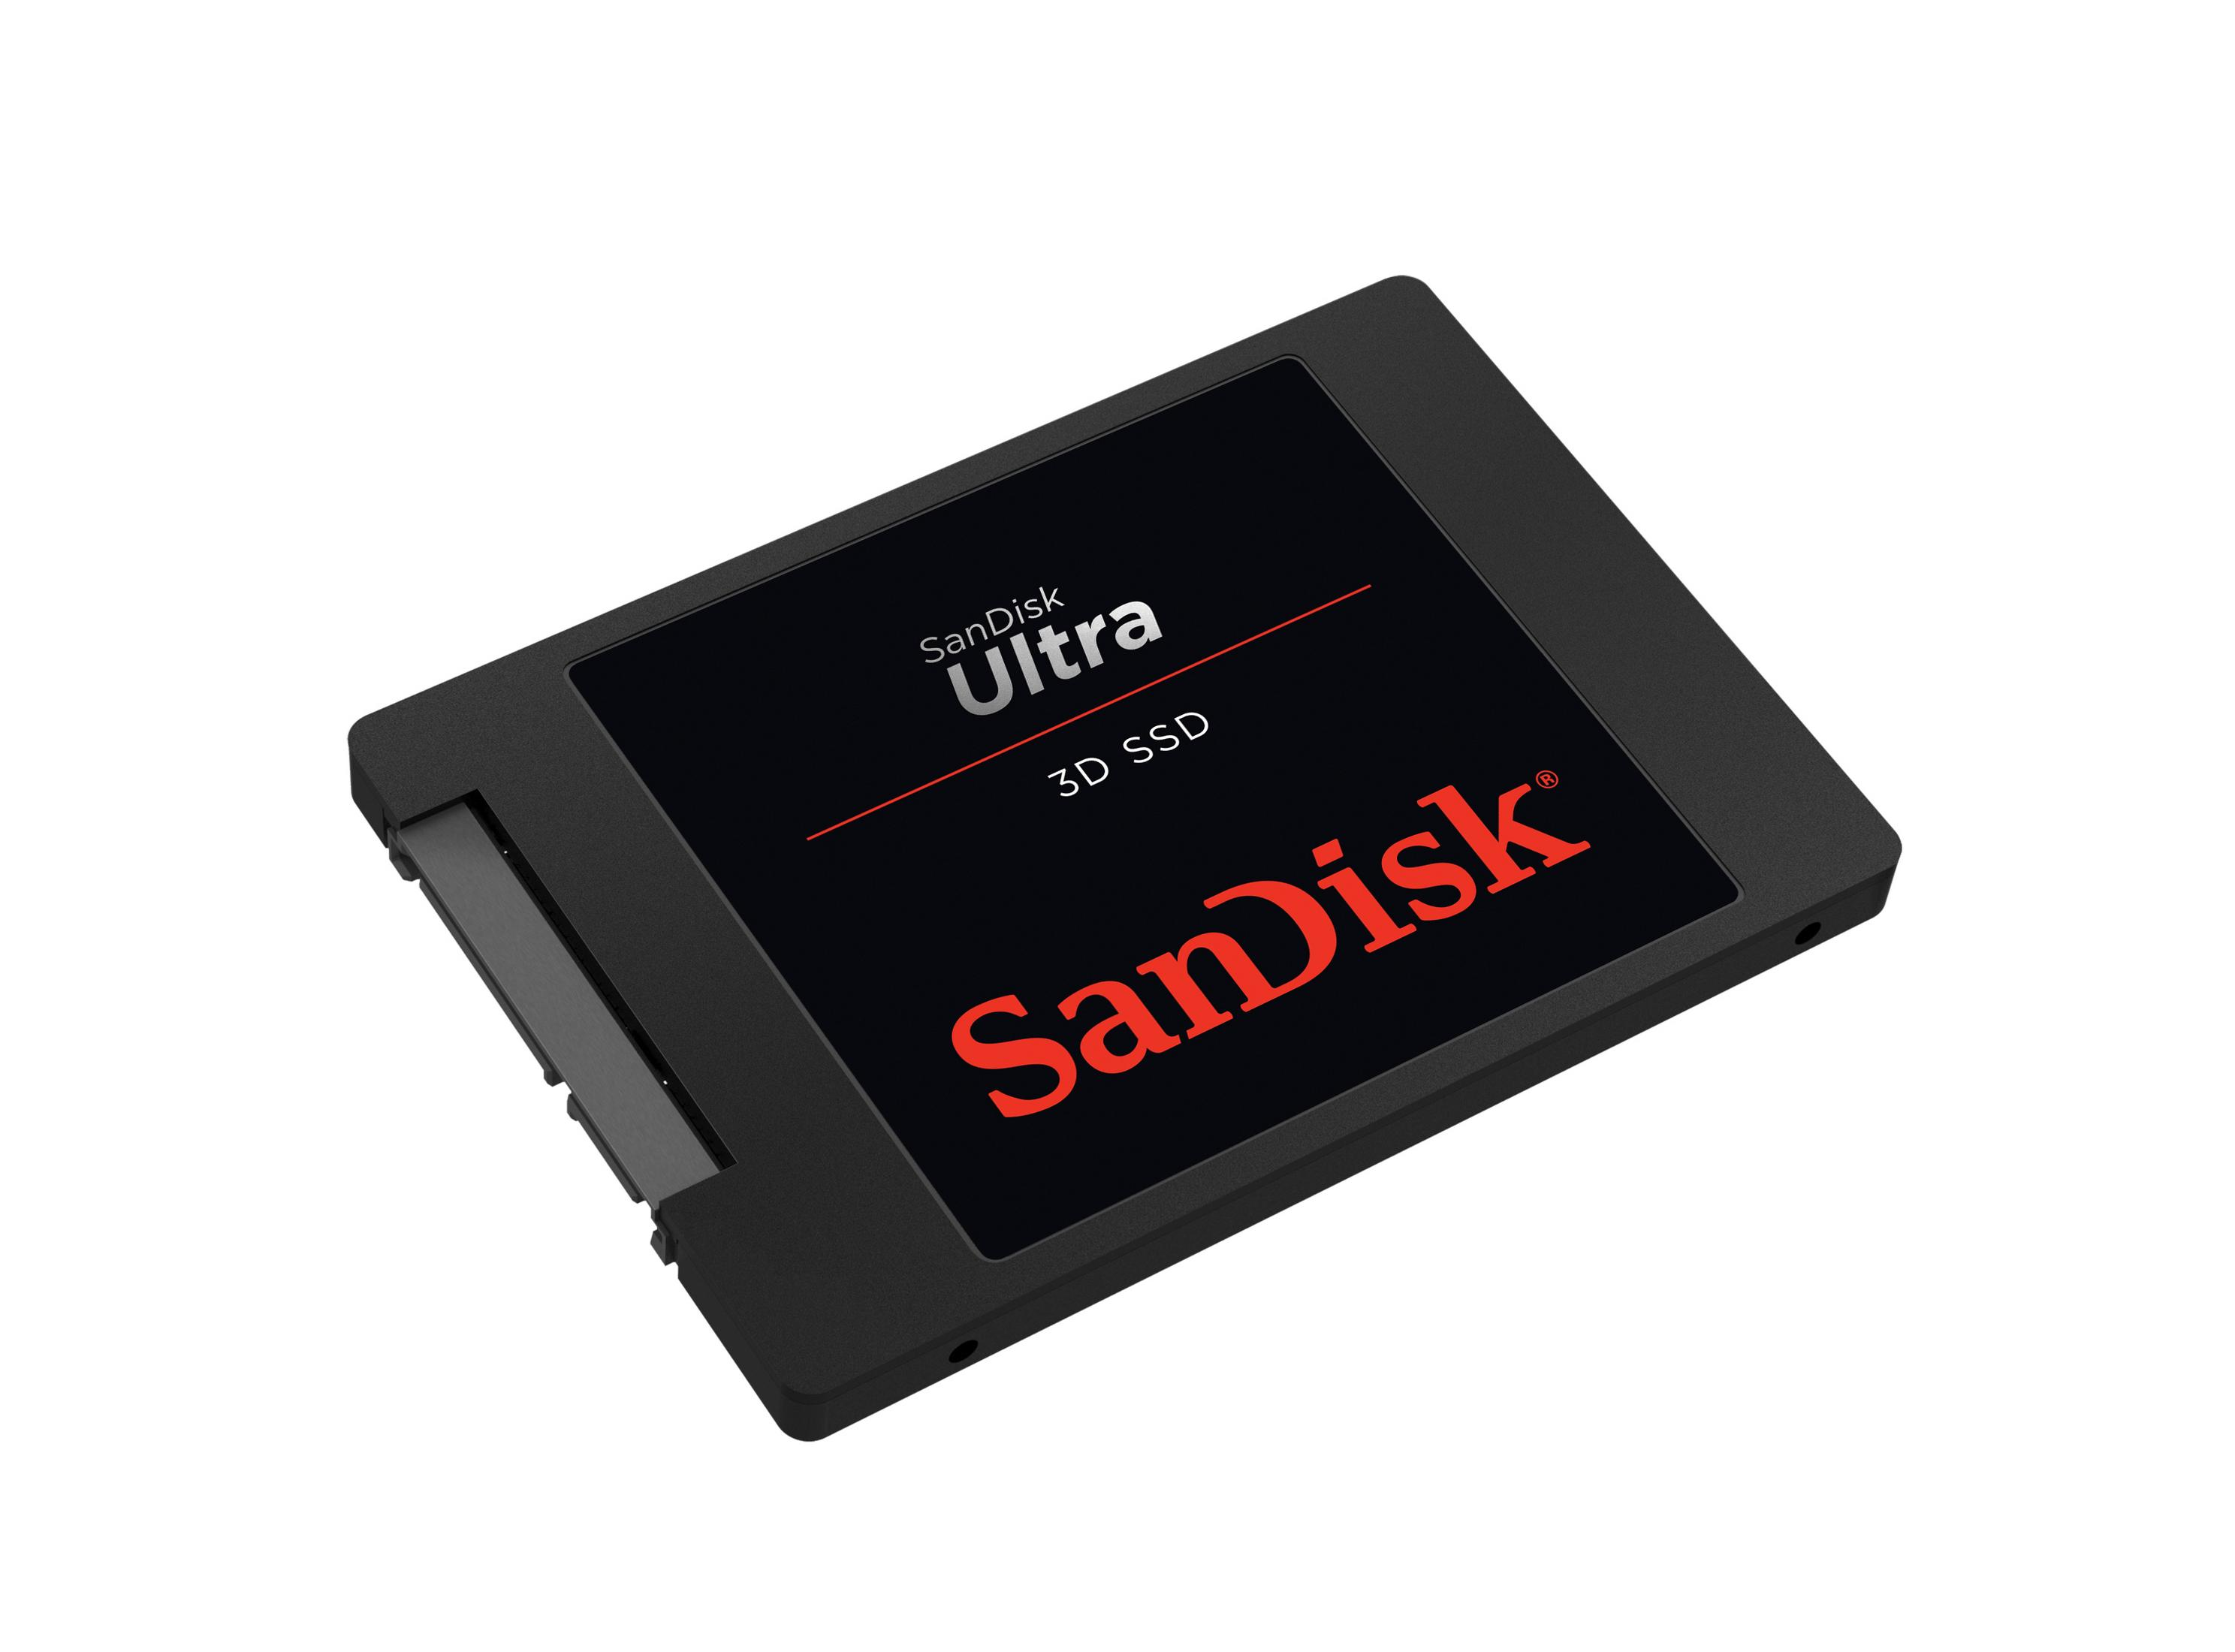 SANDISK intern 3D ULTRA SSD, SSD, 2TB 2 Zoll, 2,5 TB, SDSSDH3-2T00-G25